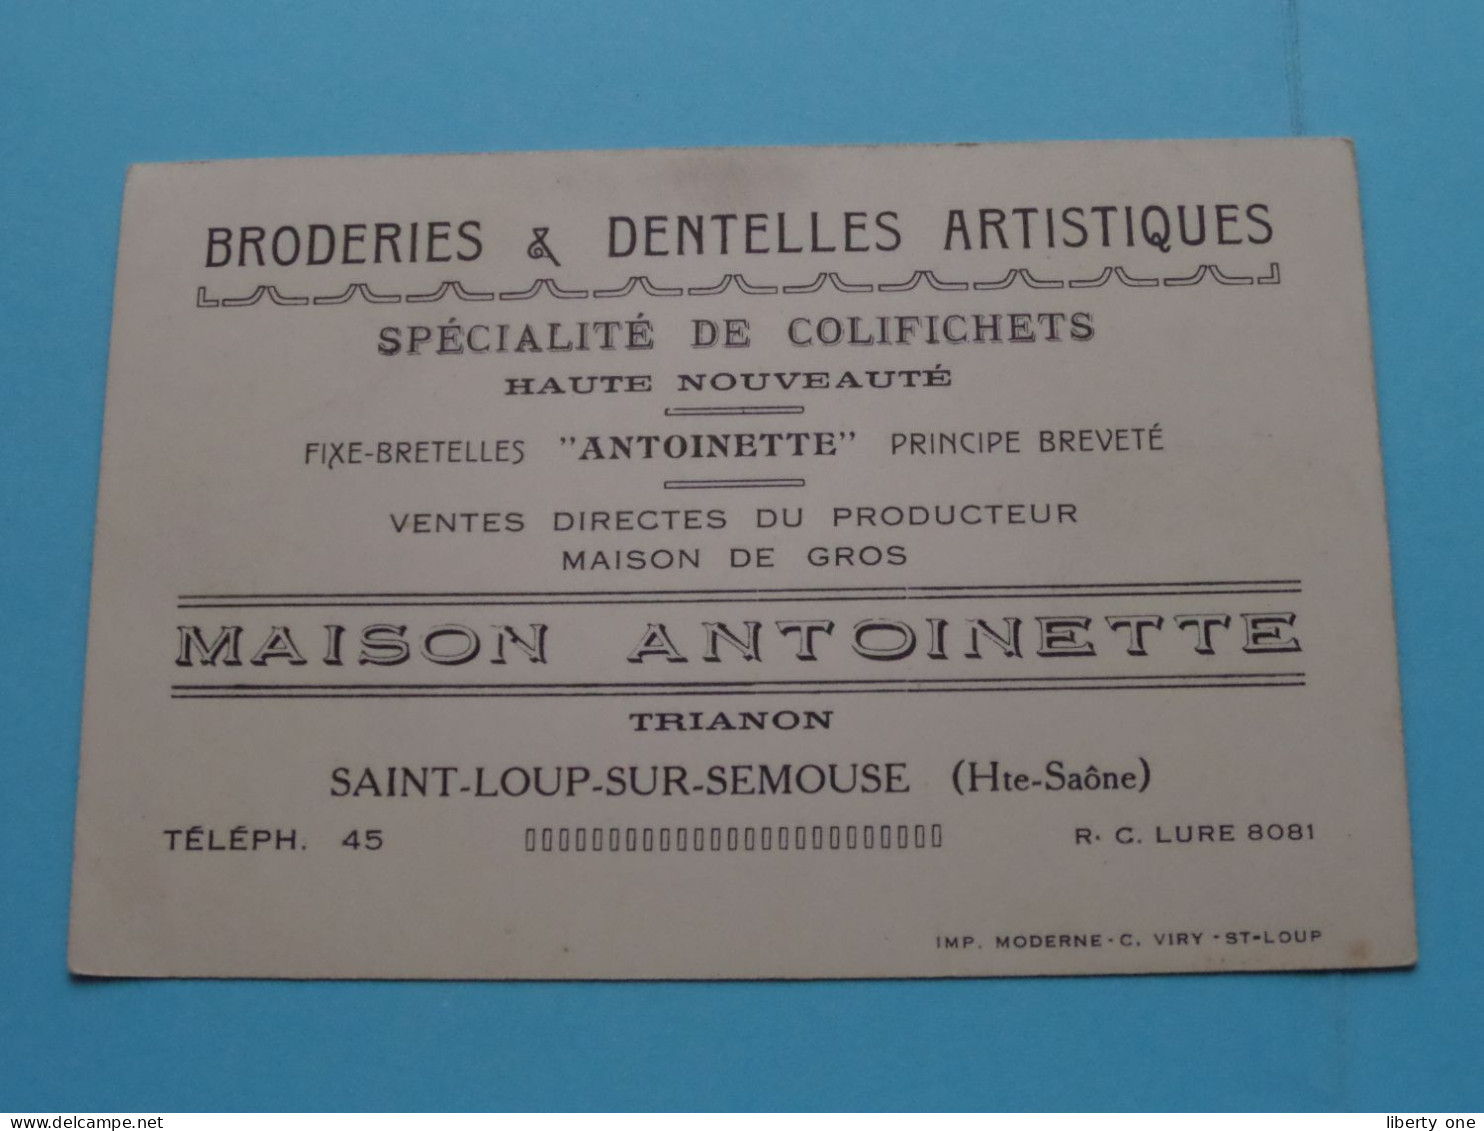 Maison ANTOINETTE Trianon - Saint-Loup-sur-Semouse (H. Saone) Tél 45 ( Voir / Zie SCAN ) FRANCE ! - Cartes De Visite